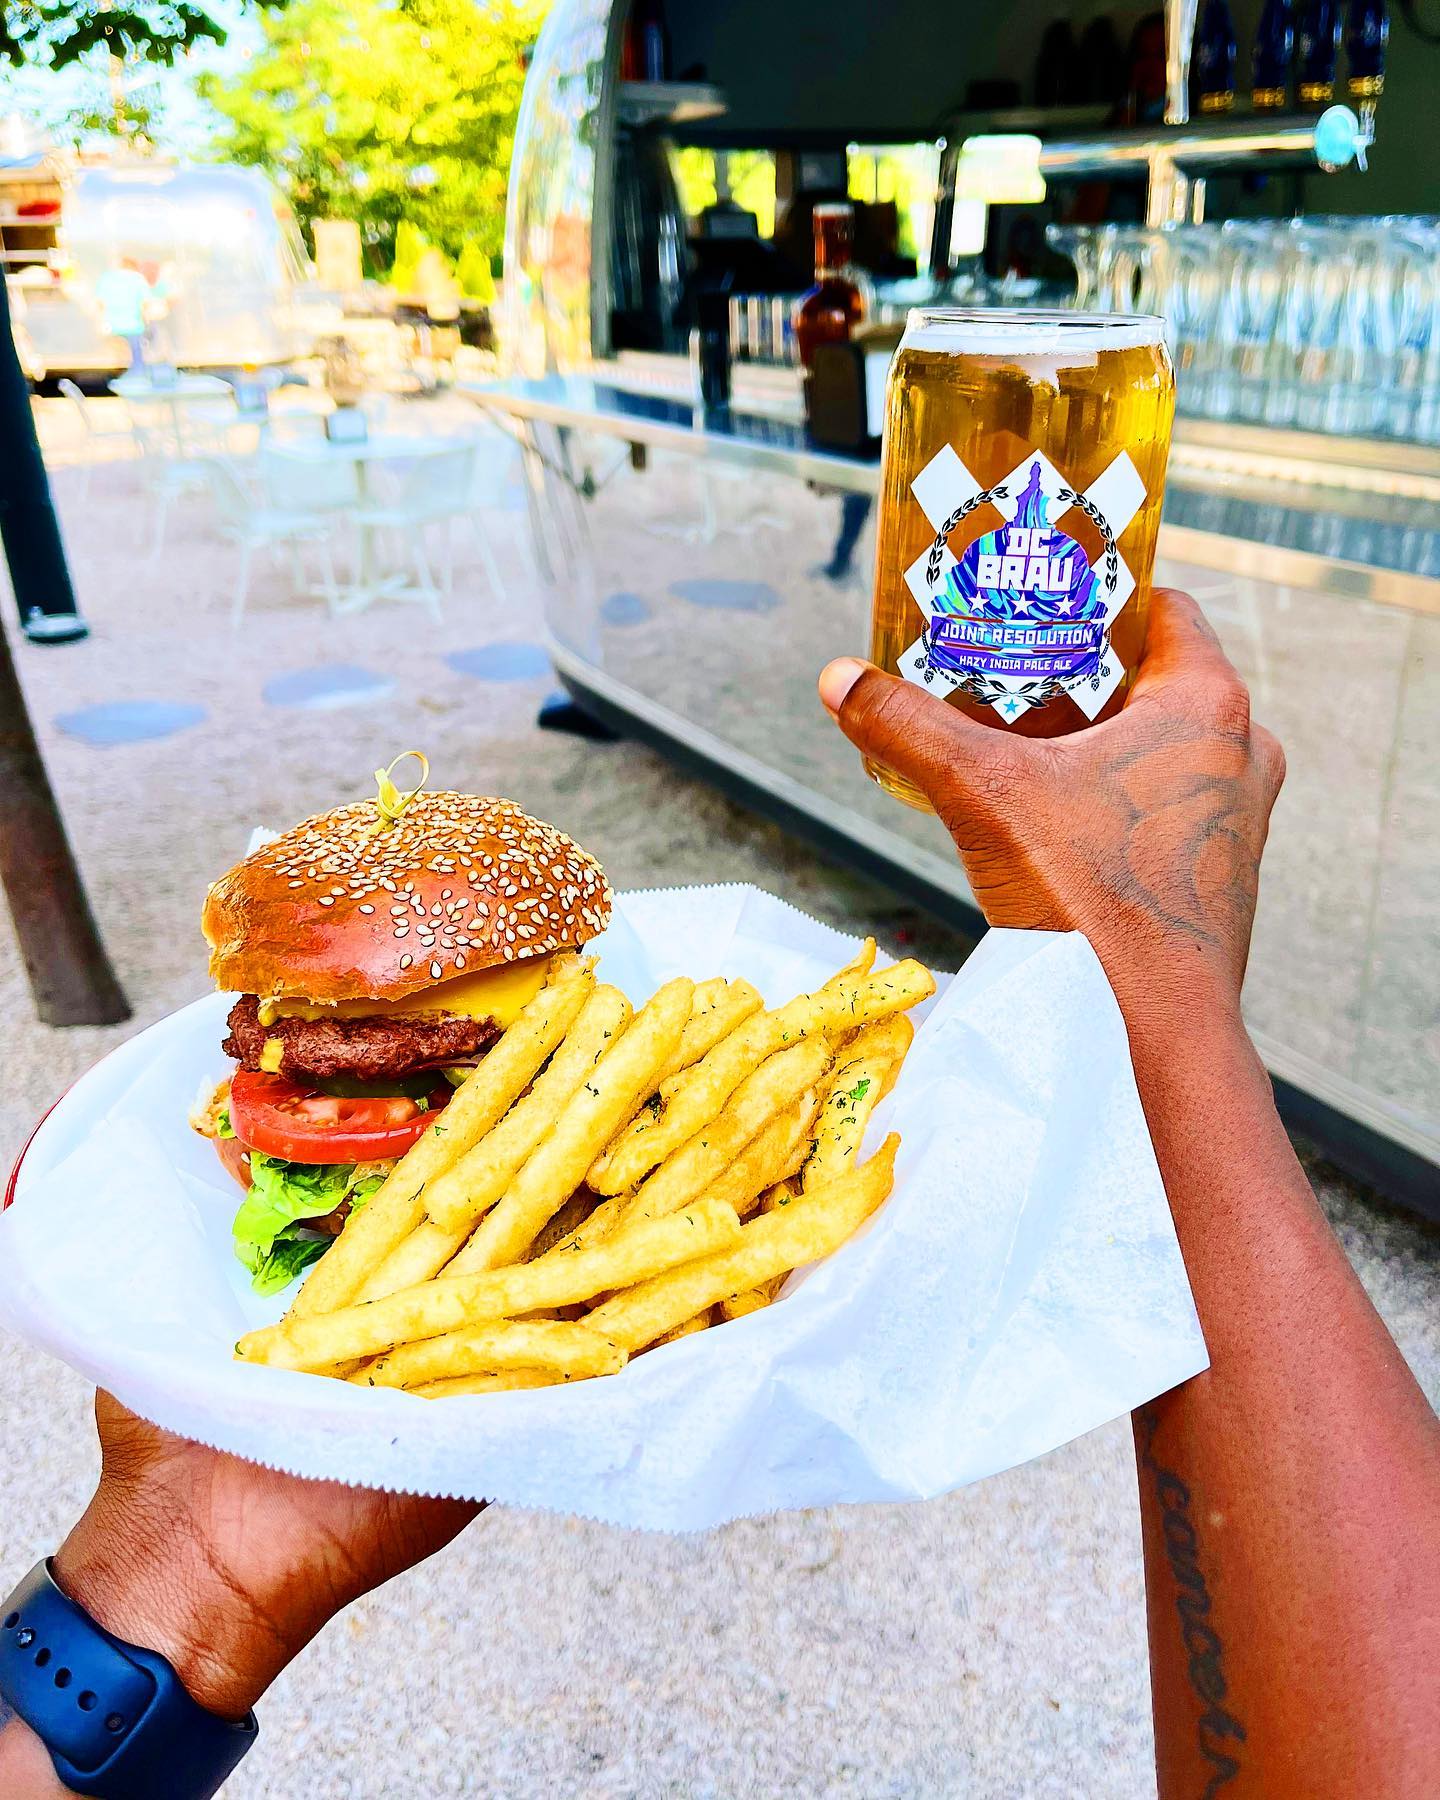 Dacha Beer Garden Navy Yard's beer & burger happy hour combo